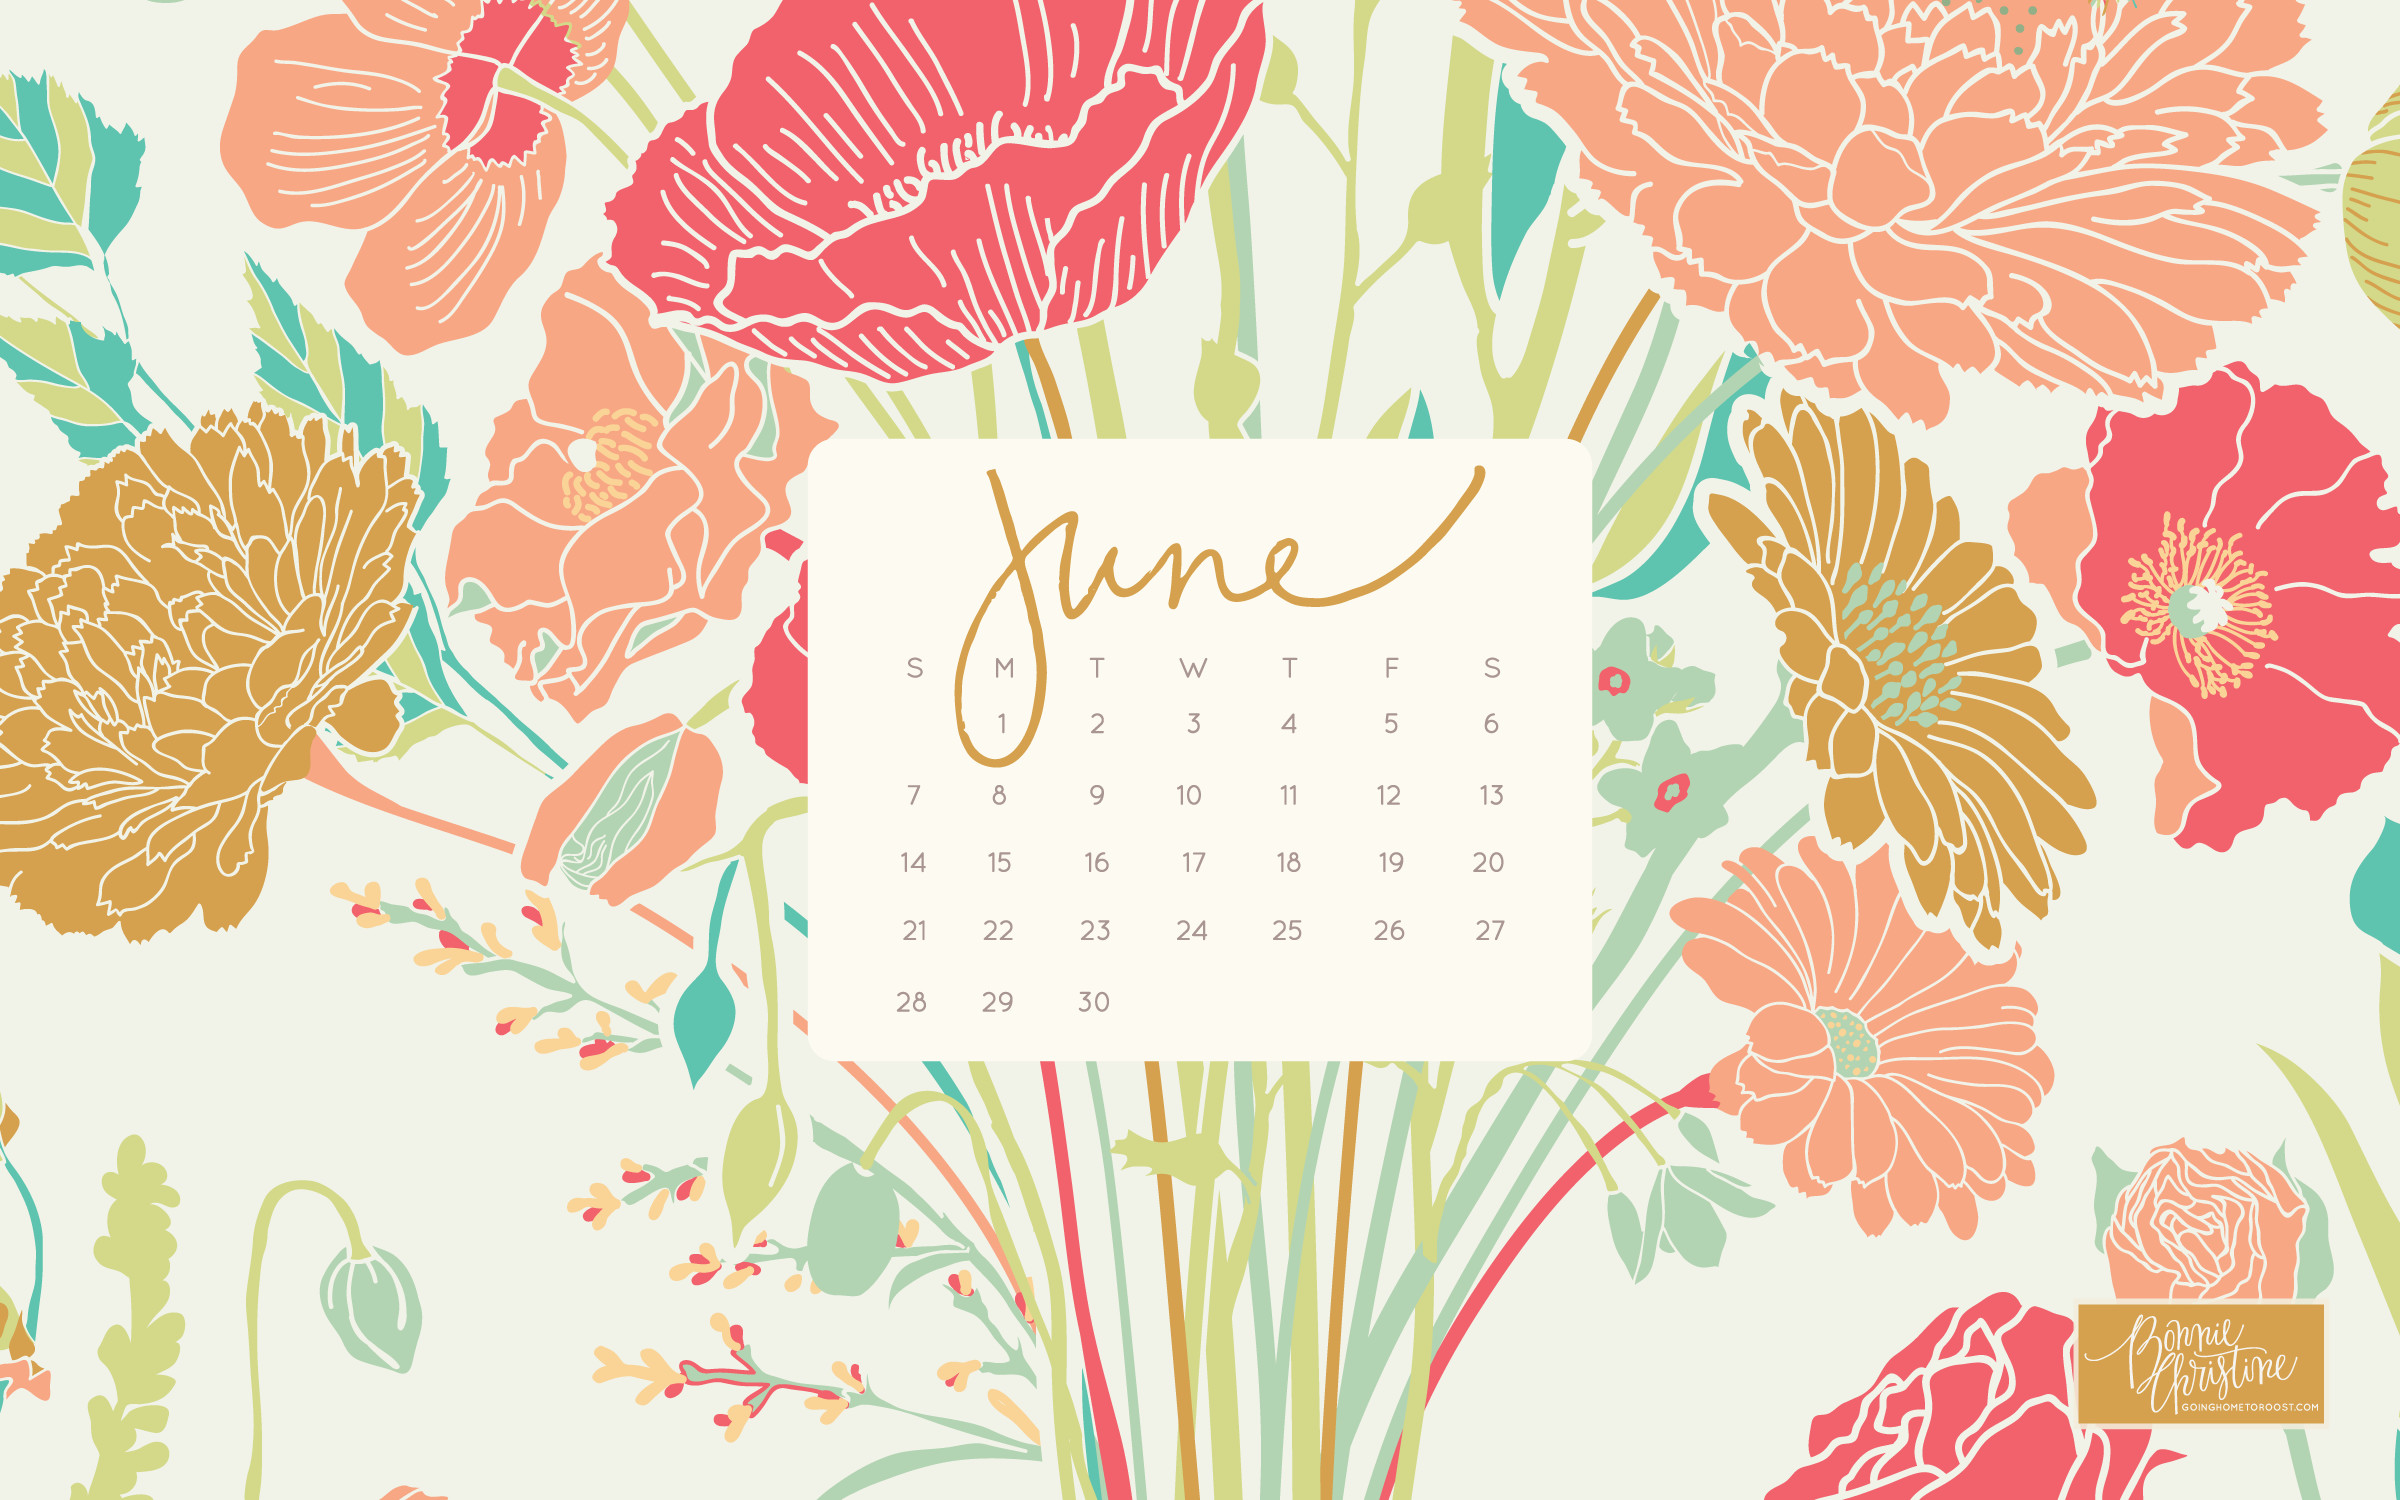 2400x1500 June 2015 Desktop + Smartphone Calendars